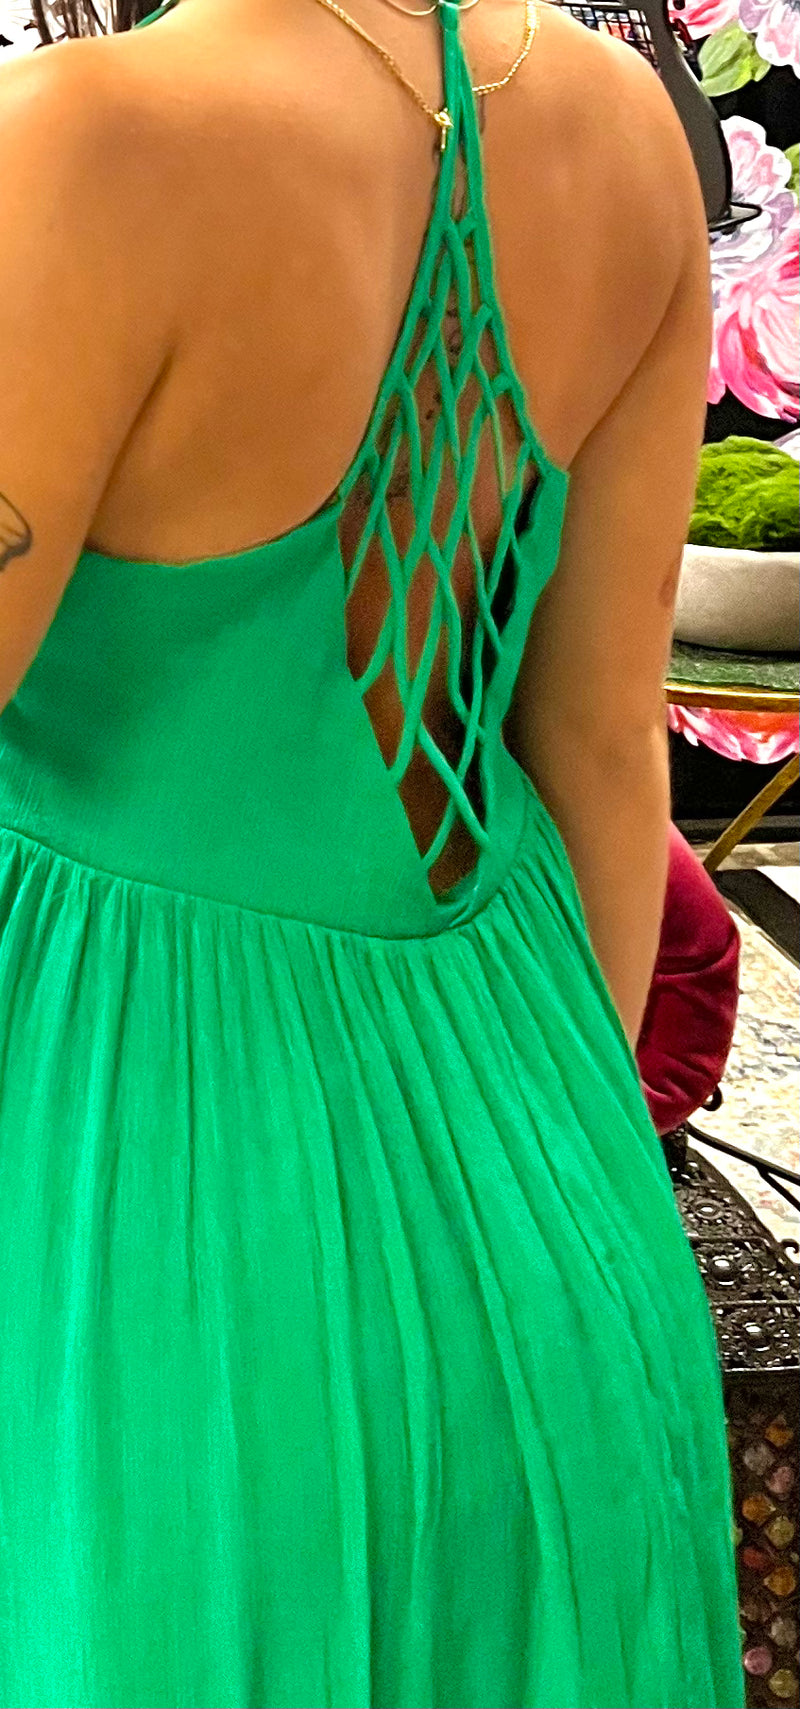 Ruffled Mini Summer Dress